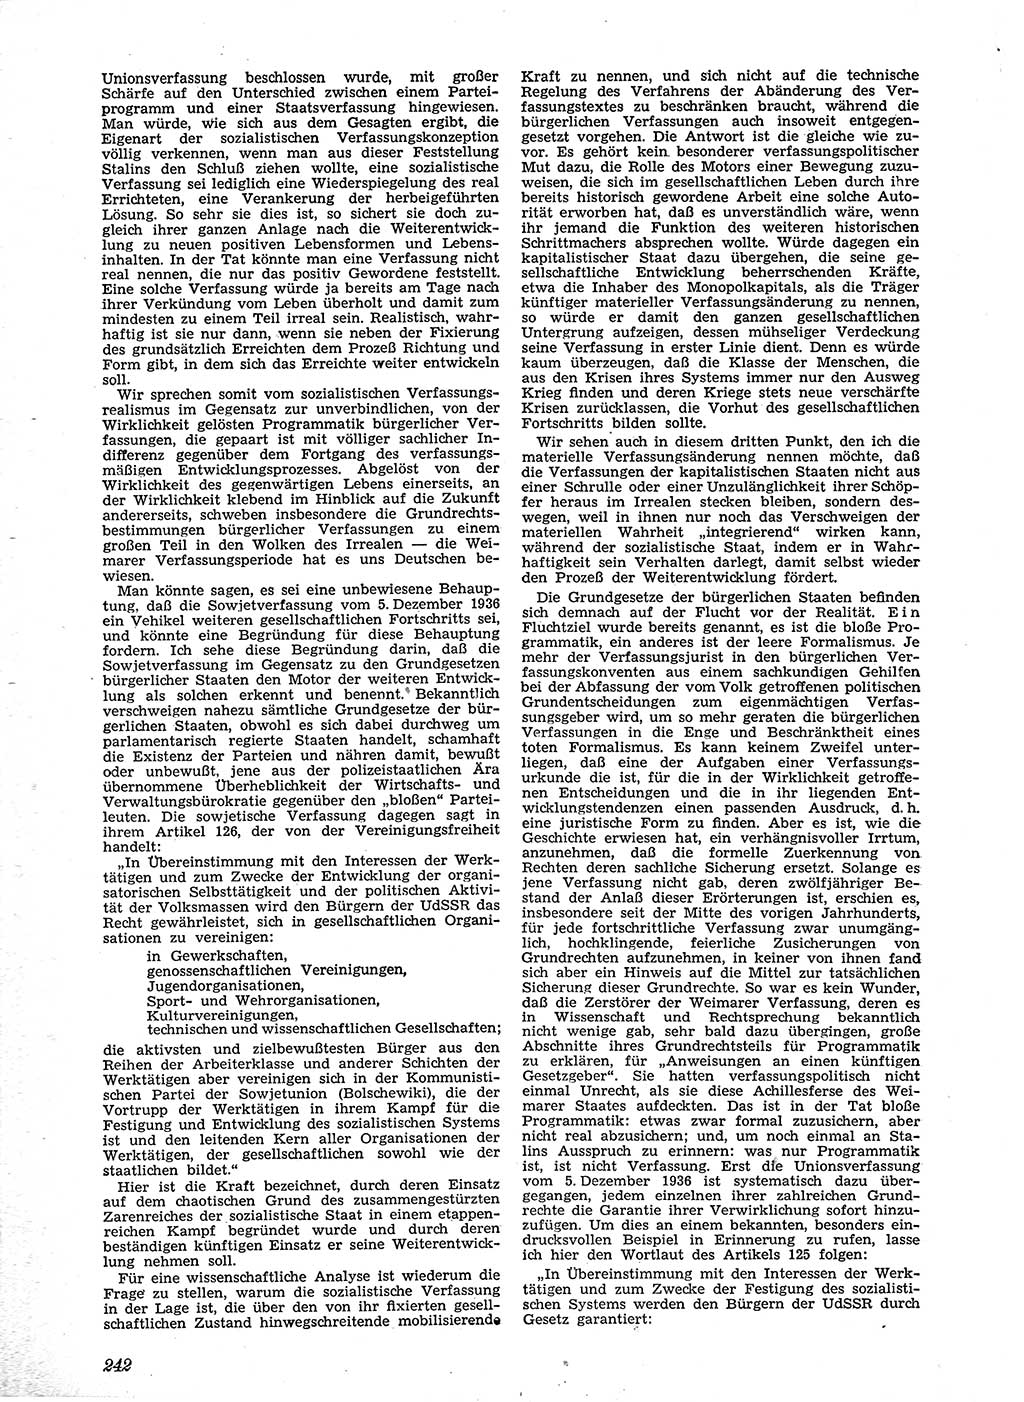 Neue Justiz (NJ), Zeitschrift für Recht und Rechtswissenschaft [Sowjetische Besatzungszone (SBZ) Deutschland], 2. Jahrgang 1948, Seite 242 (NJ SBZ Dtl. 1948, S. 242)